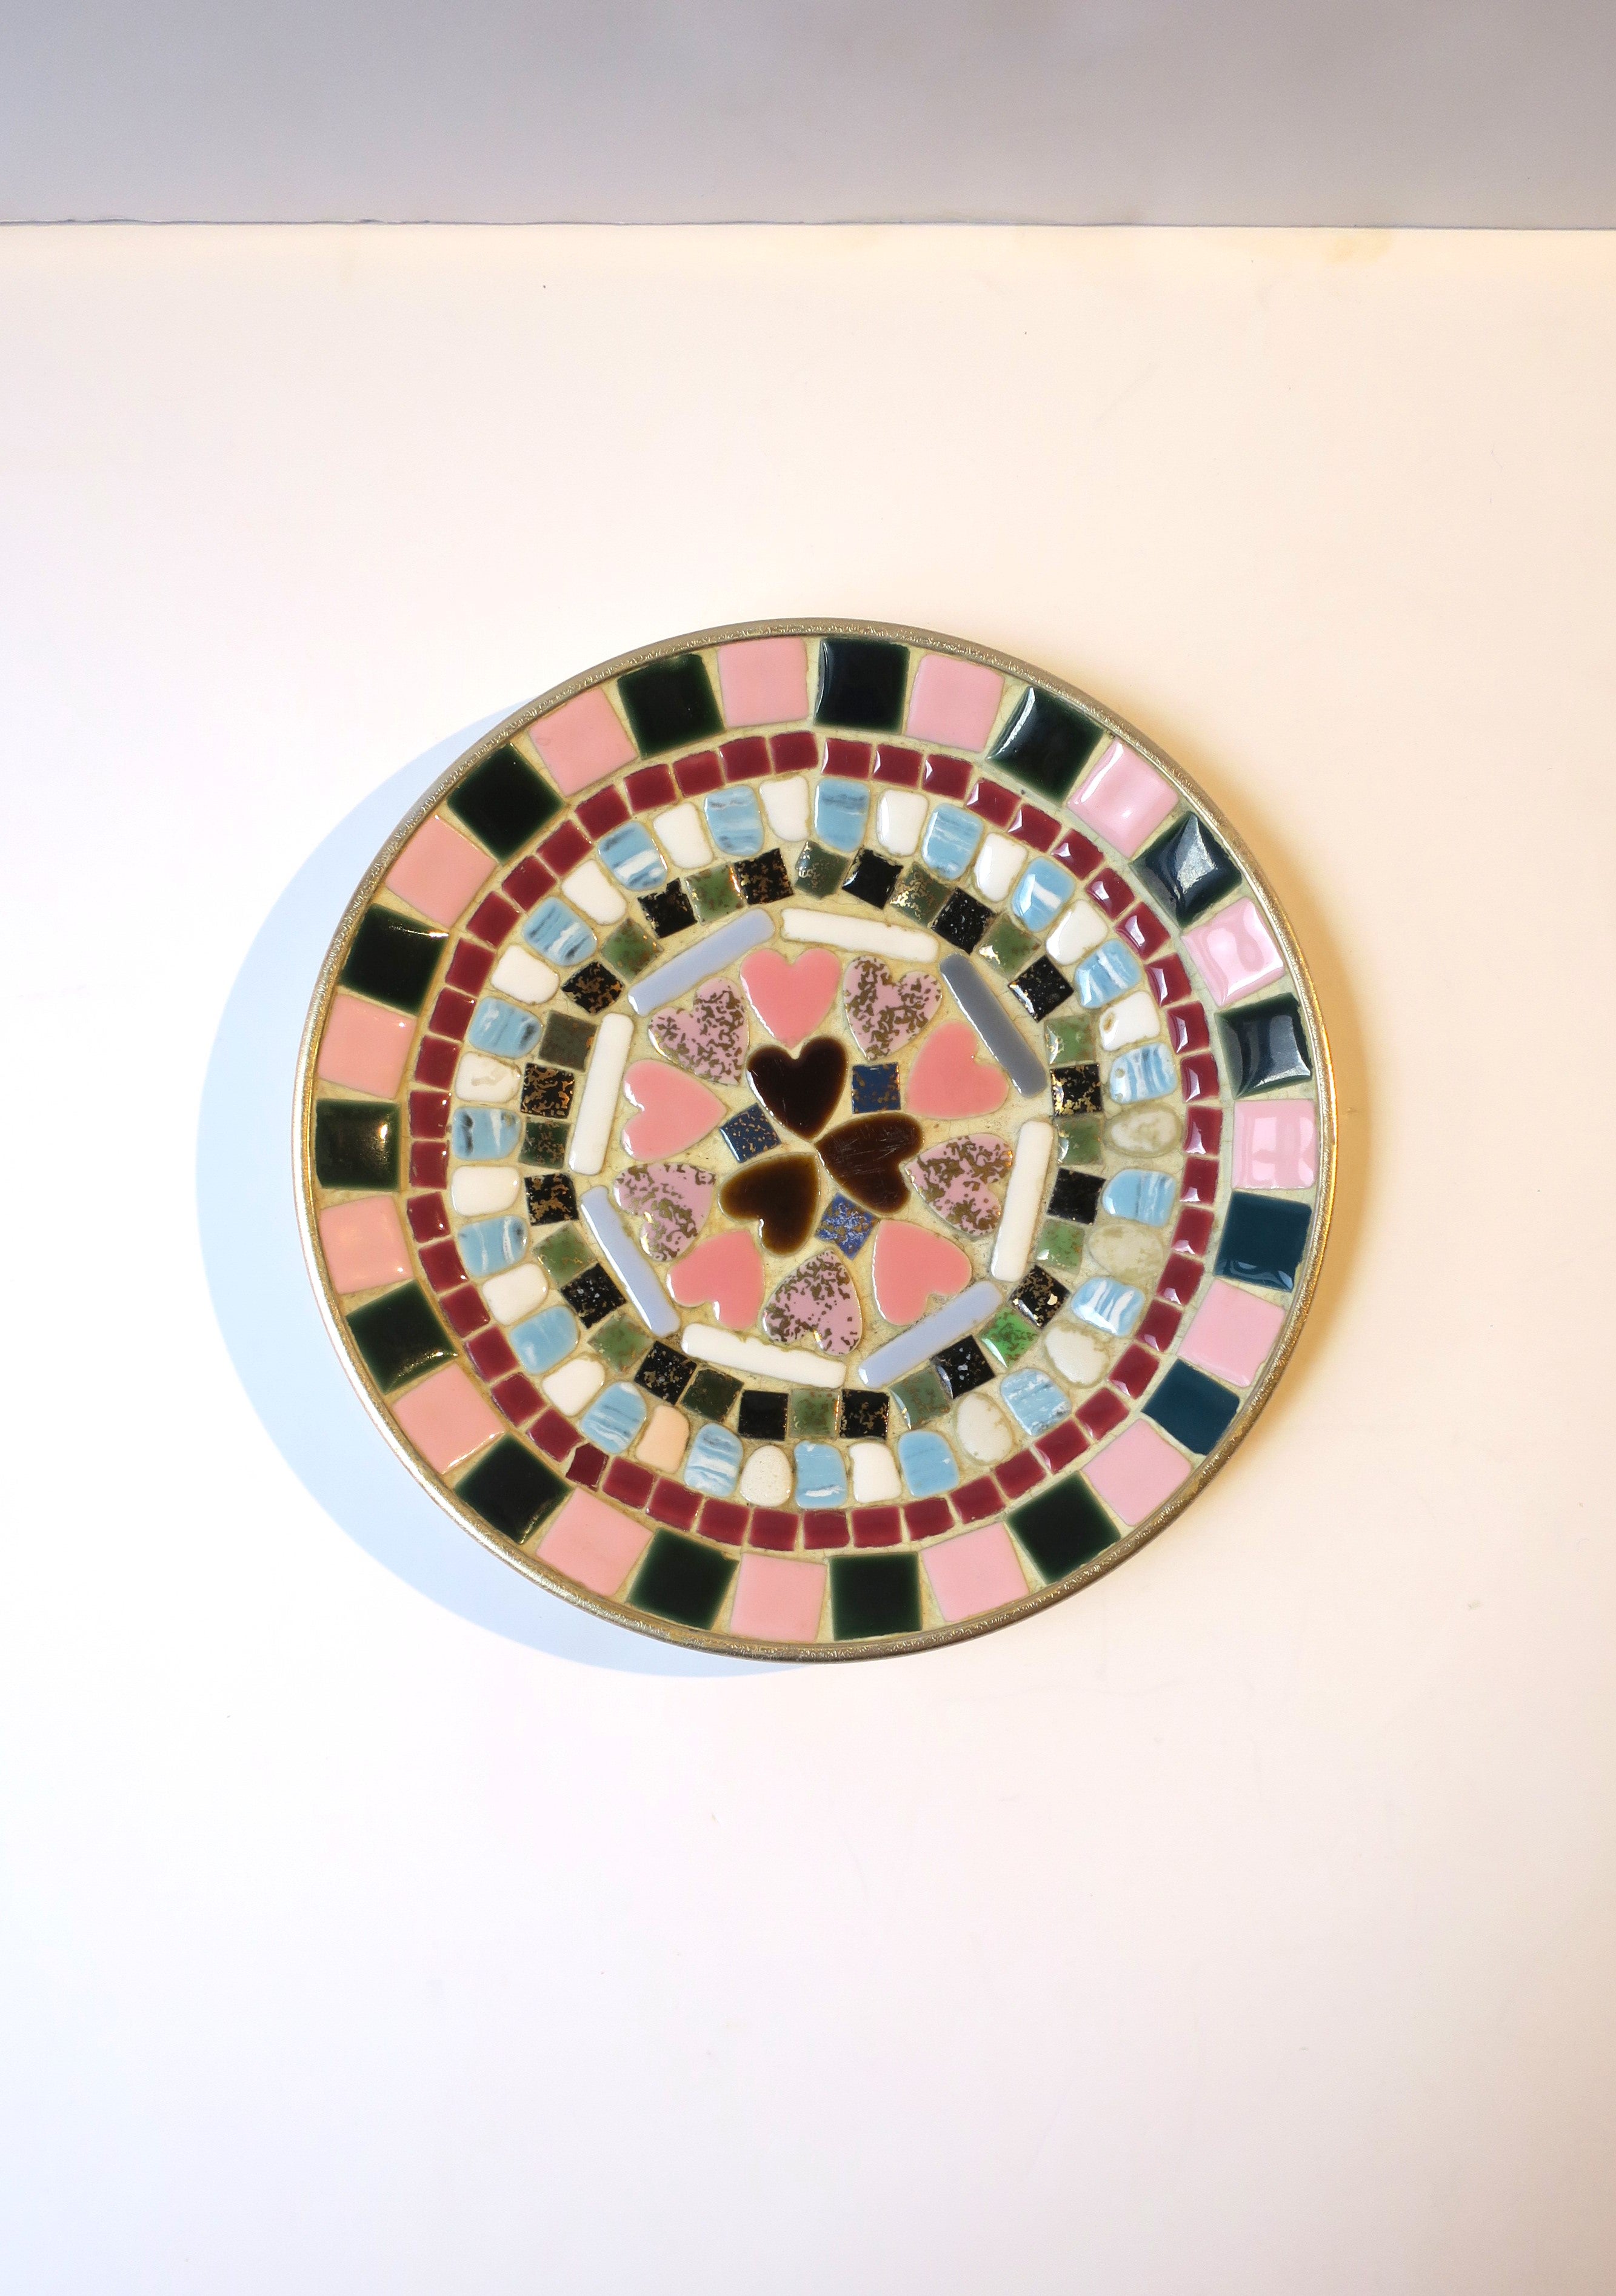 Keramische Mosaikschüssel oder Videopoche mit rosa Herzen, ca. Mitte des 20. Jahrhunderts, 1960er Jahre, USA. Die Schale ist rund; sie besteht aus quadratischen und rechteckigen Kacheln und einer Gruppe von herzförmigen Kacheln in der Mitte. Zu den